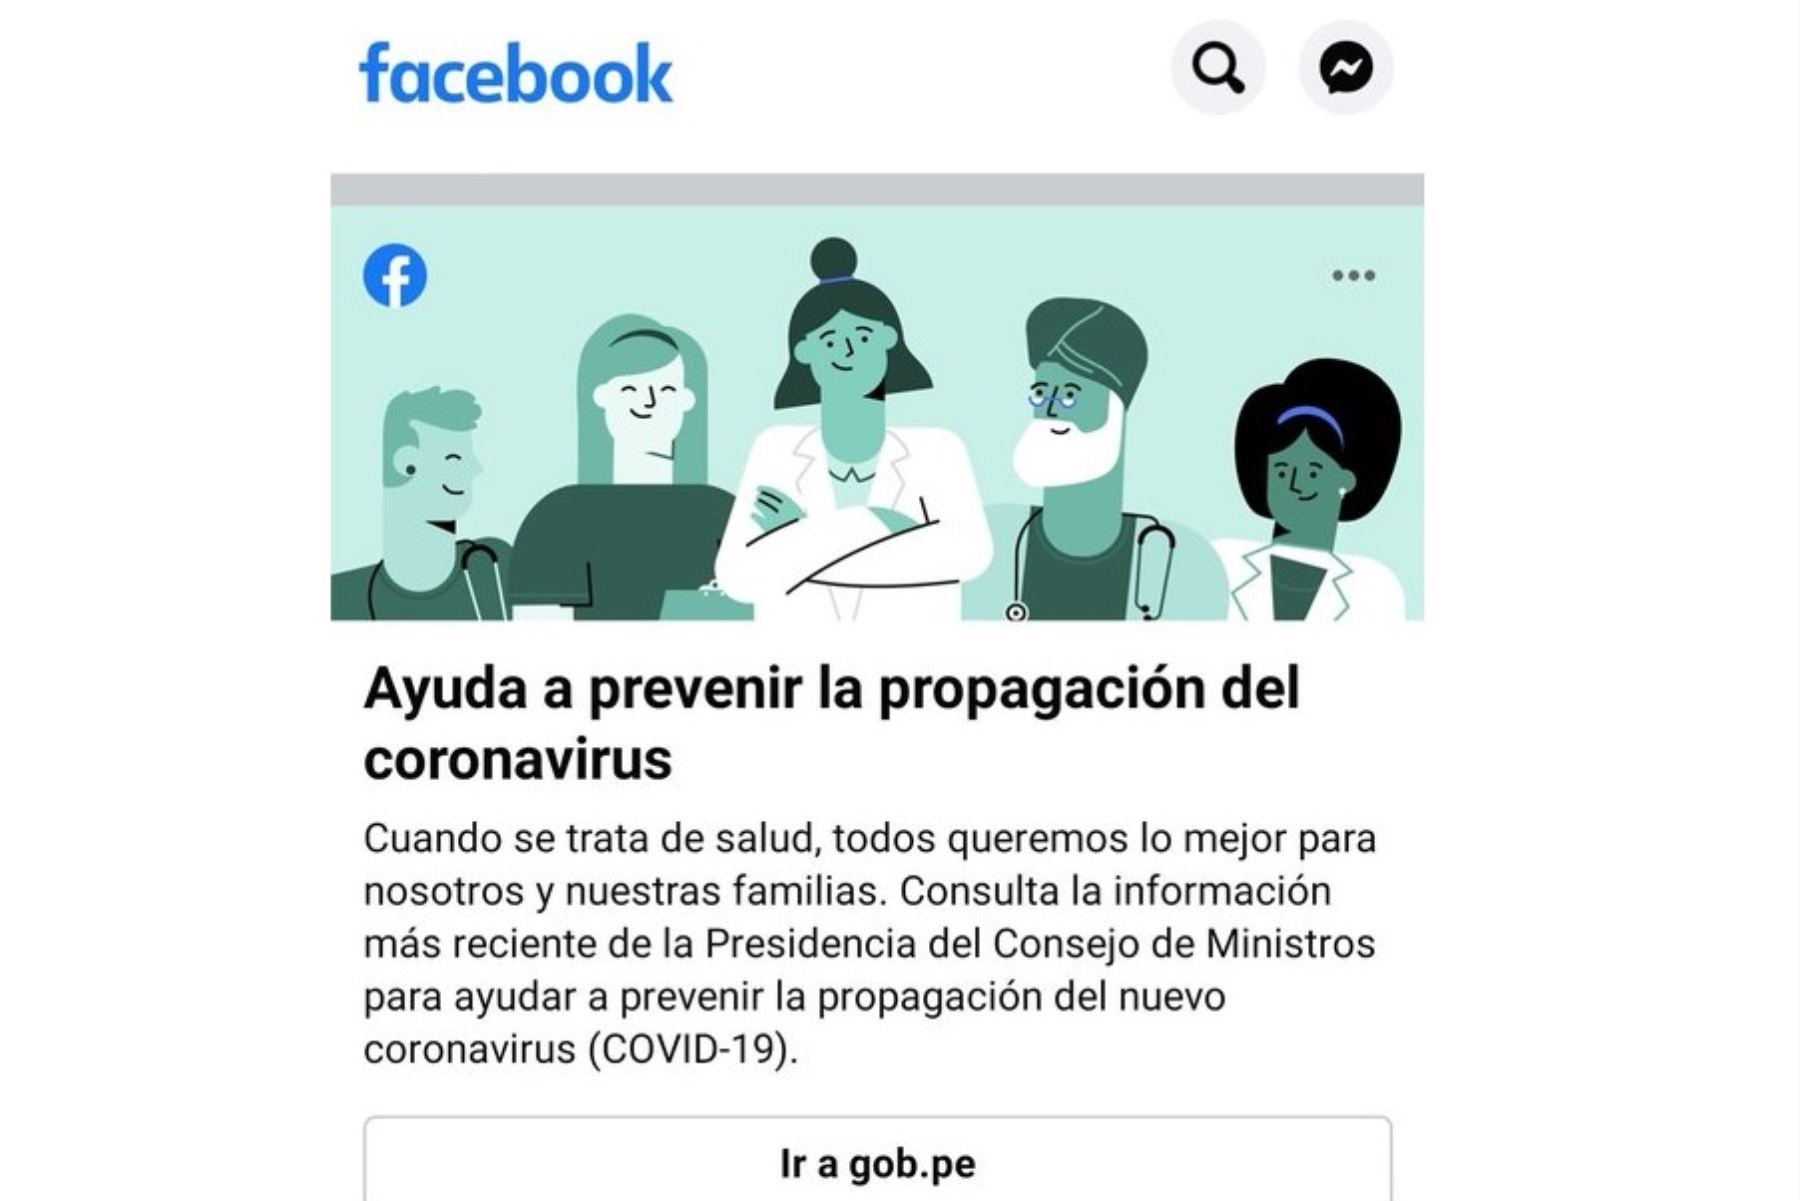 En el Perú, la página sobre coronavirus del portal único Gob.pe ha sido presentada como la plataforma oficial